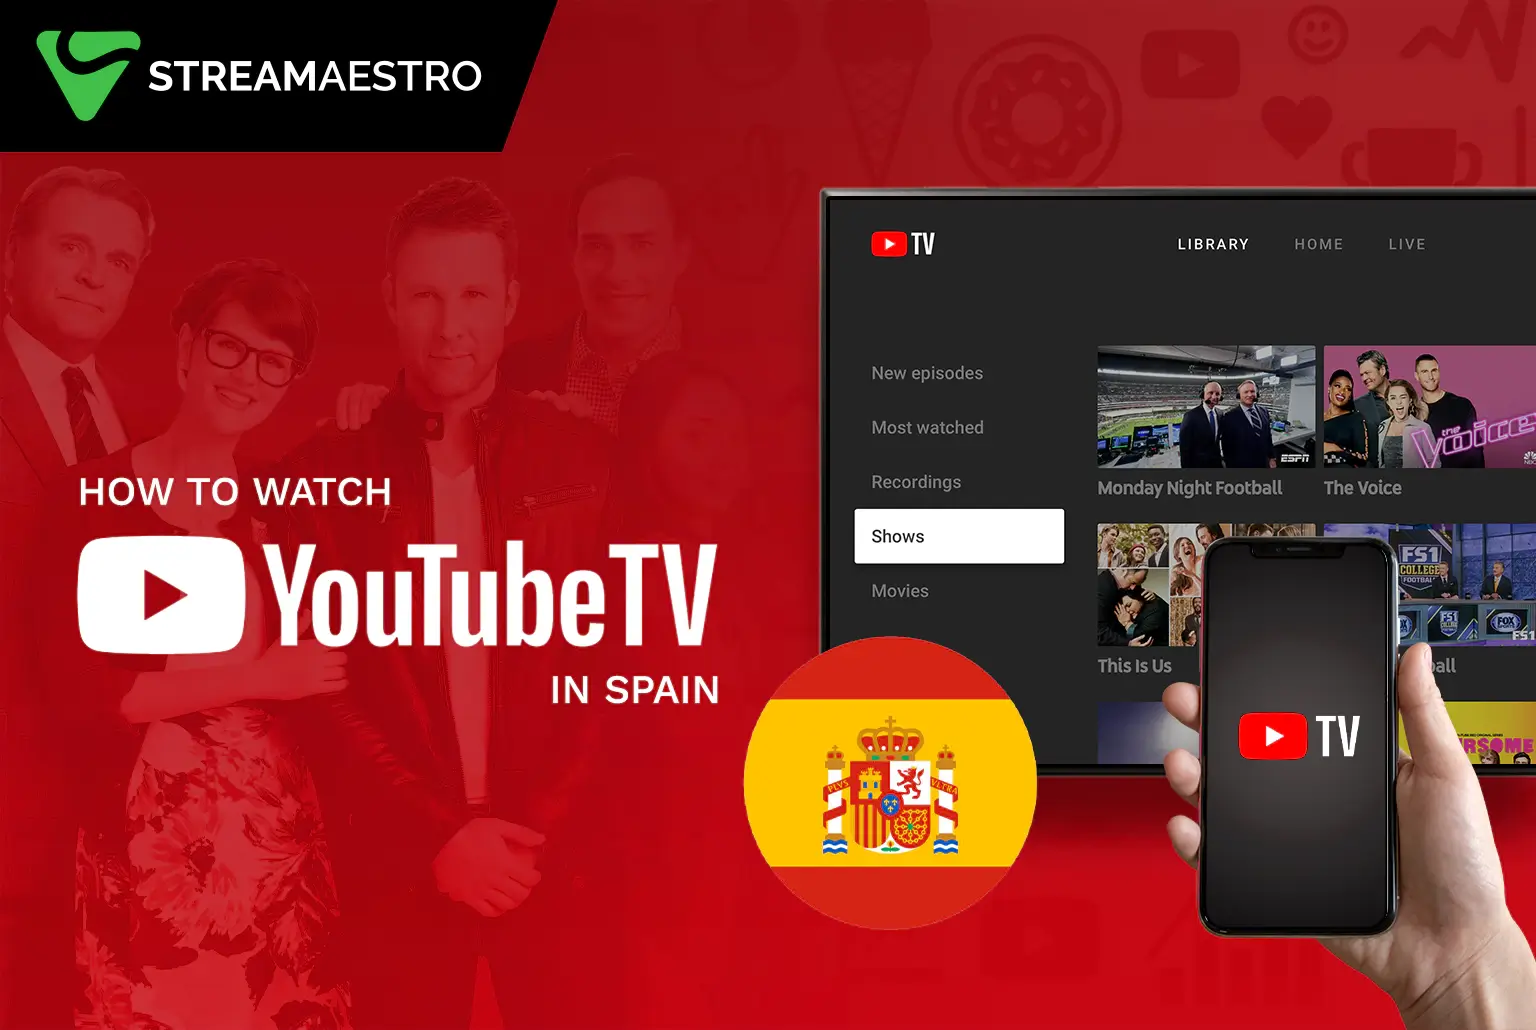 YouTube TV in Spain